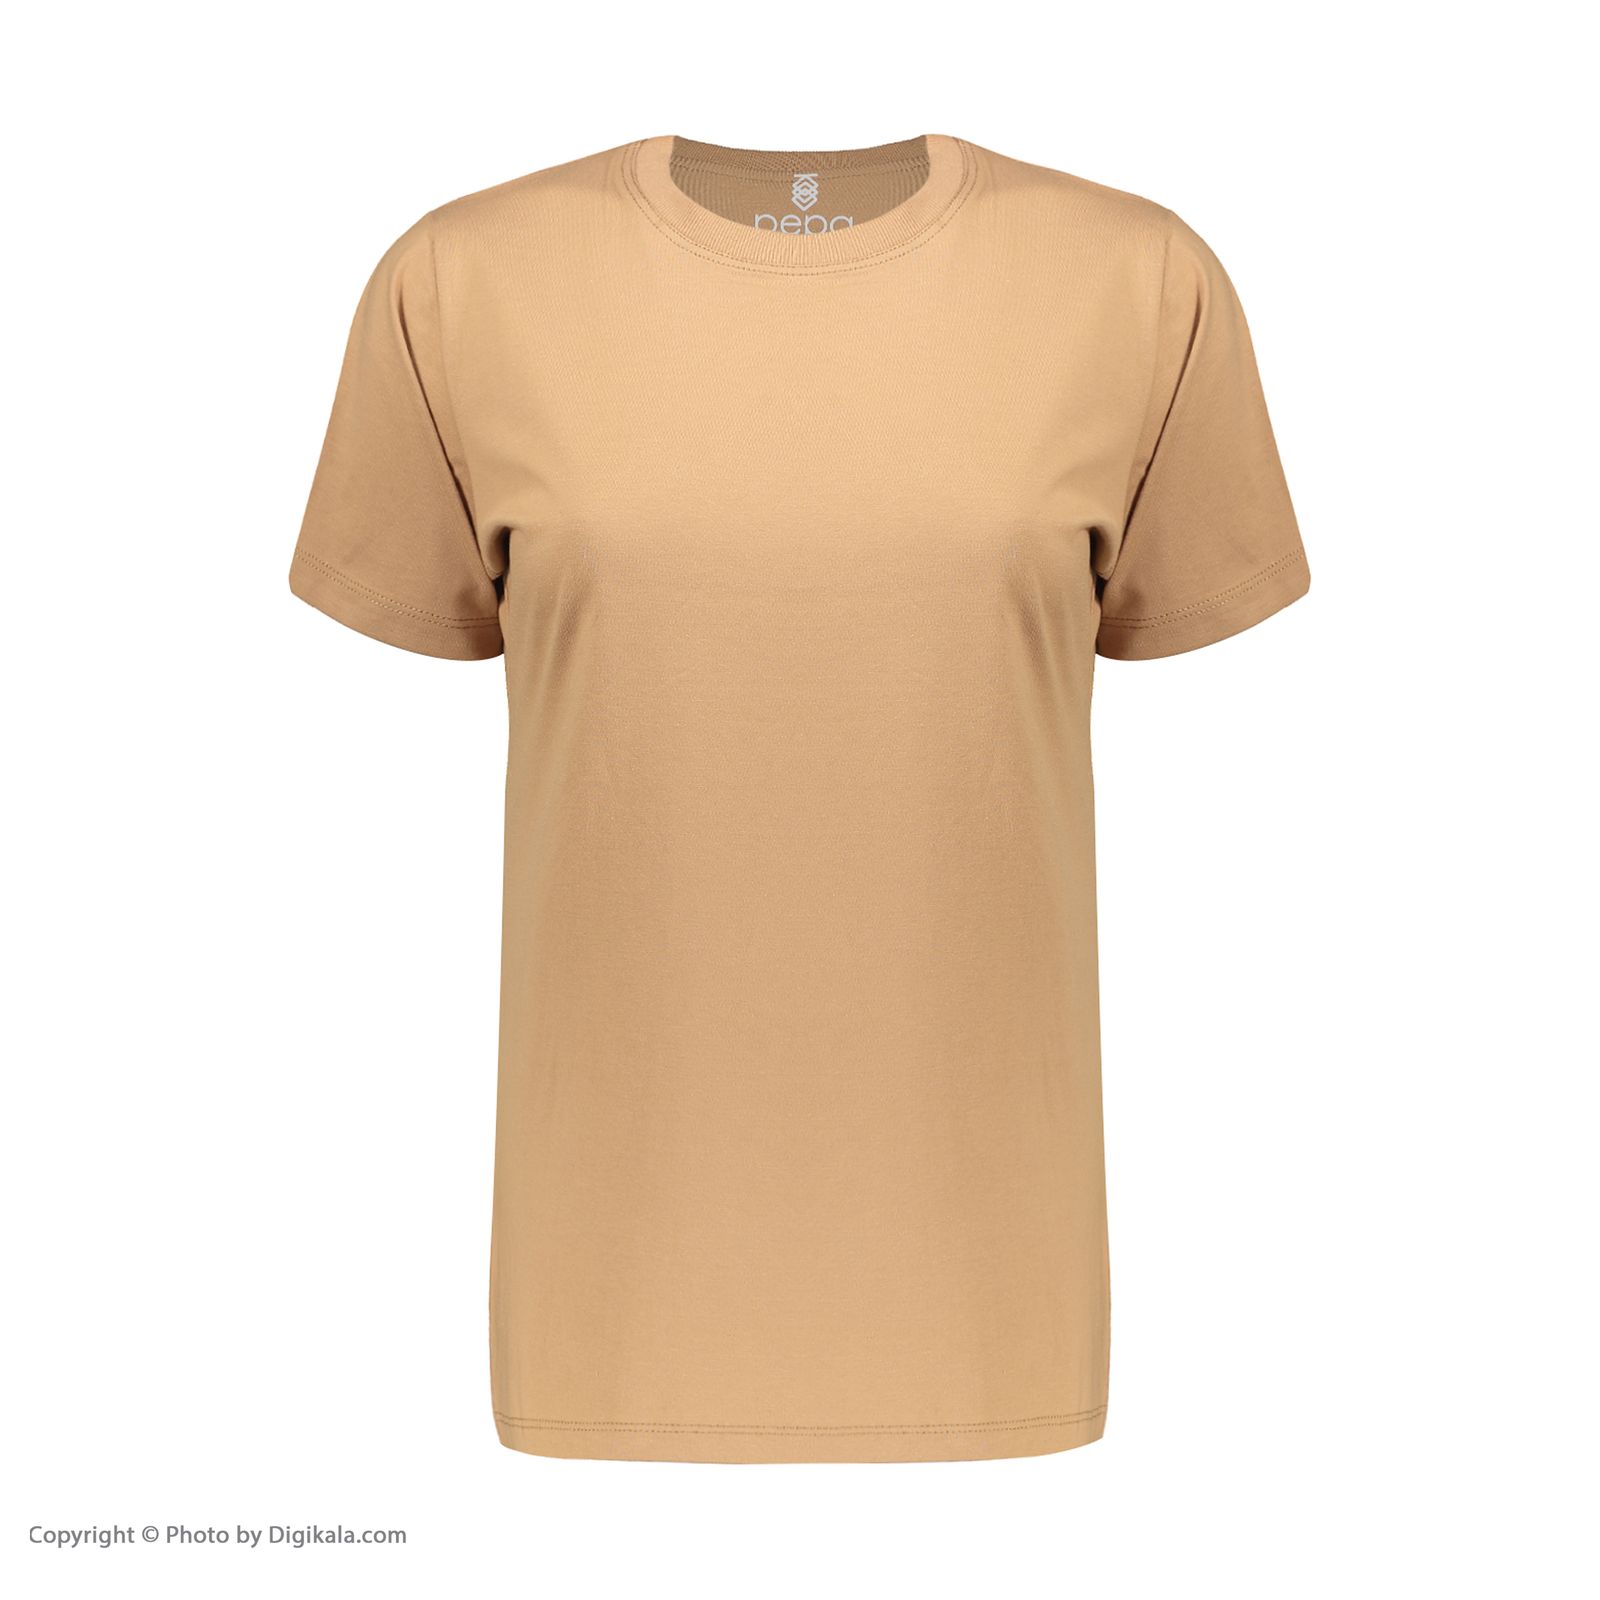 تی شرت آستین کوتاه زنانه پپا مدل Plain رنگ نسکافه ای -  - 2